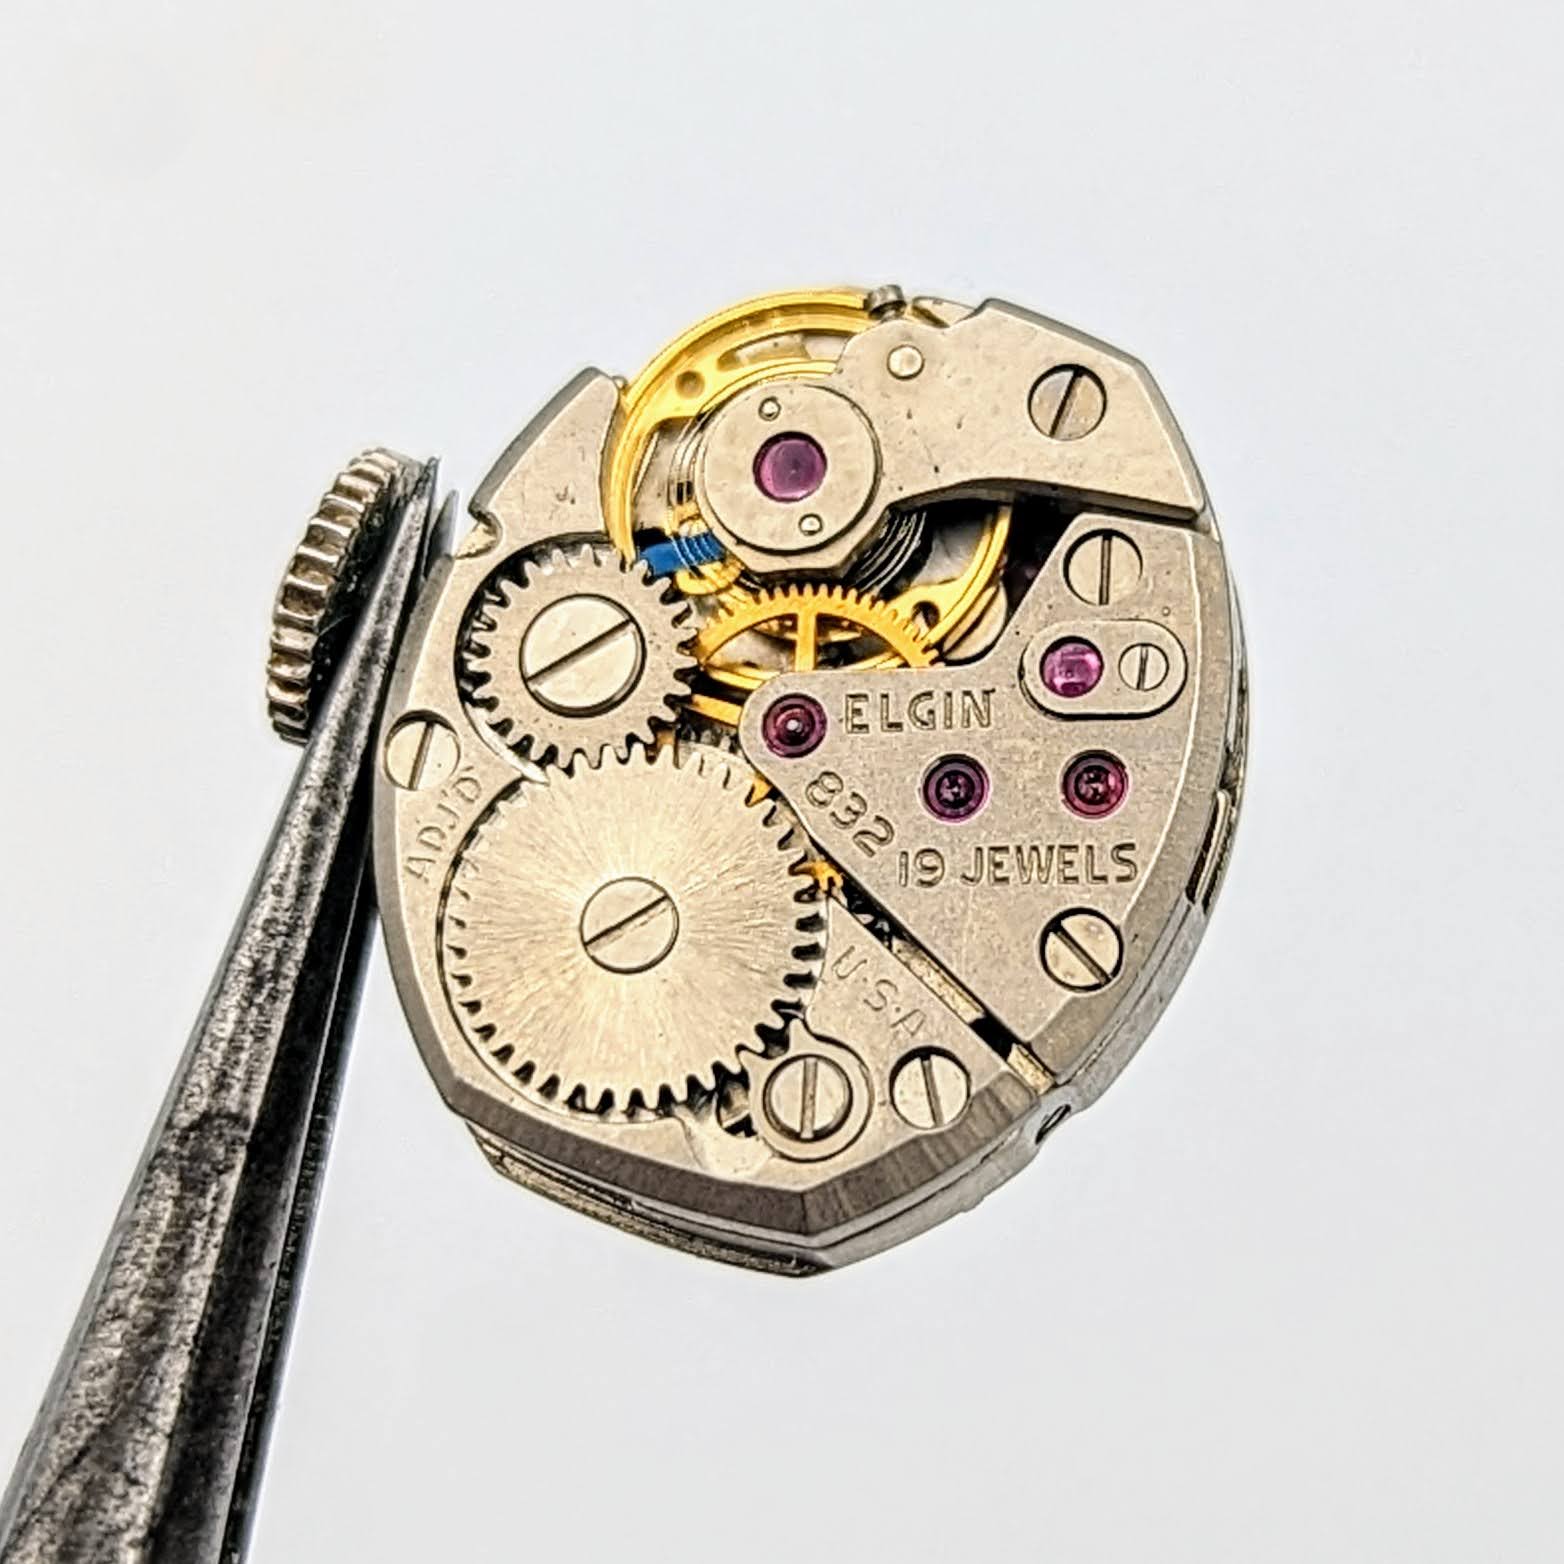 Ladies ELGIN Wristwatch 1960s American Grade 832 19 Jewels Vintage Watch - IN BOX!